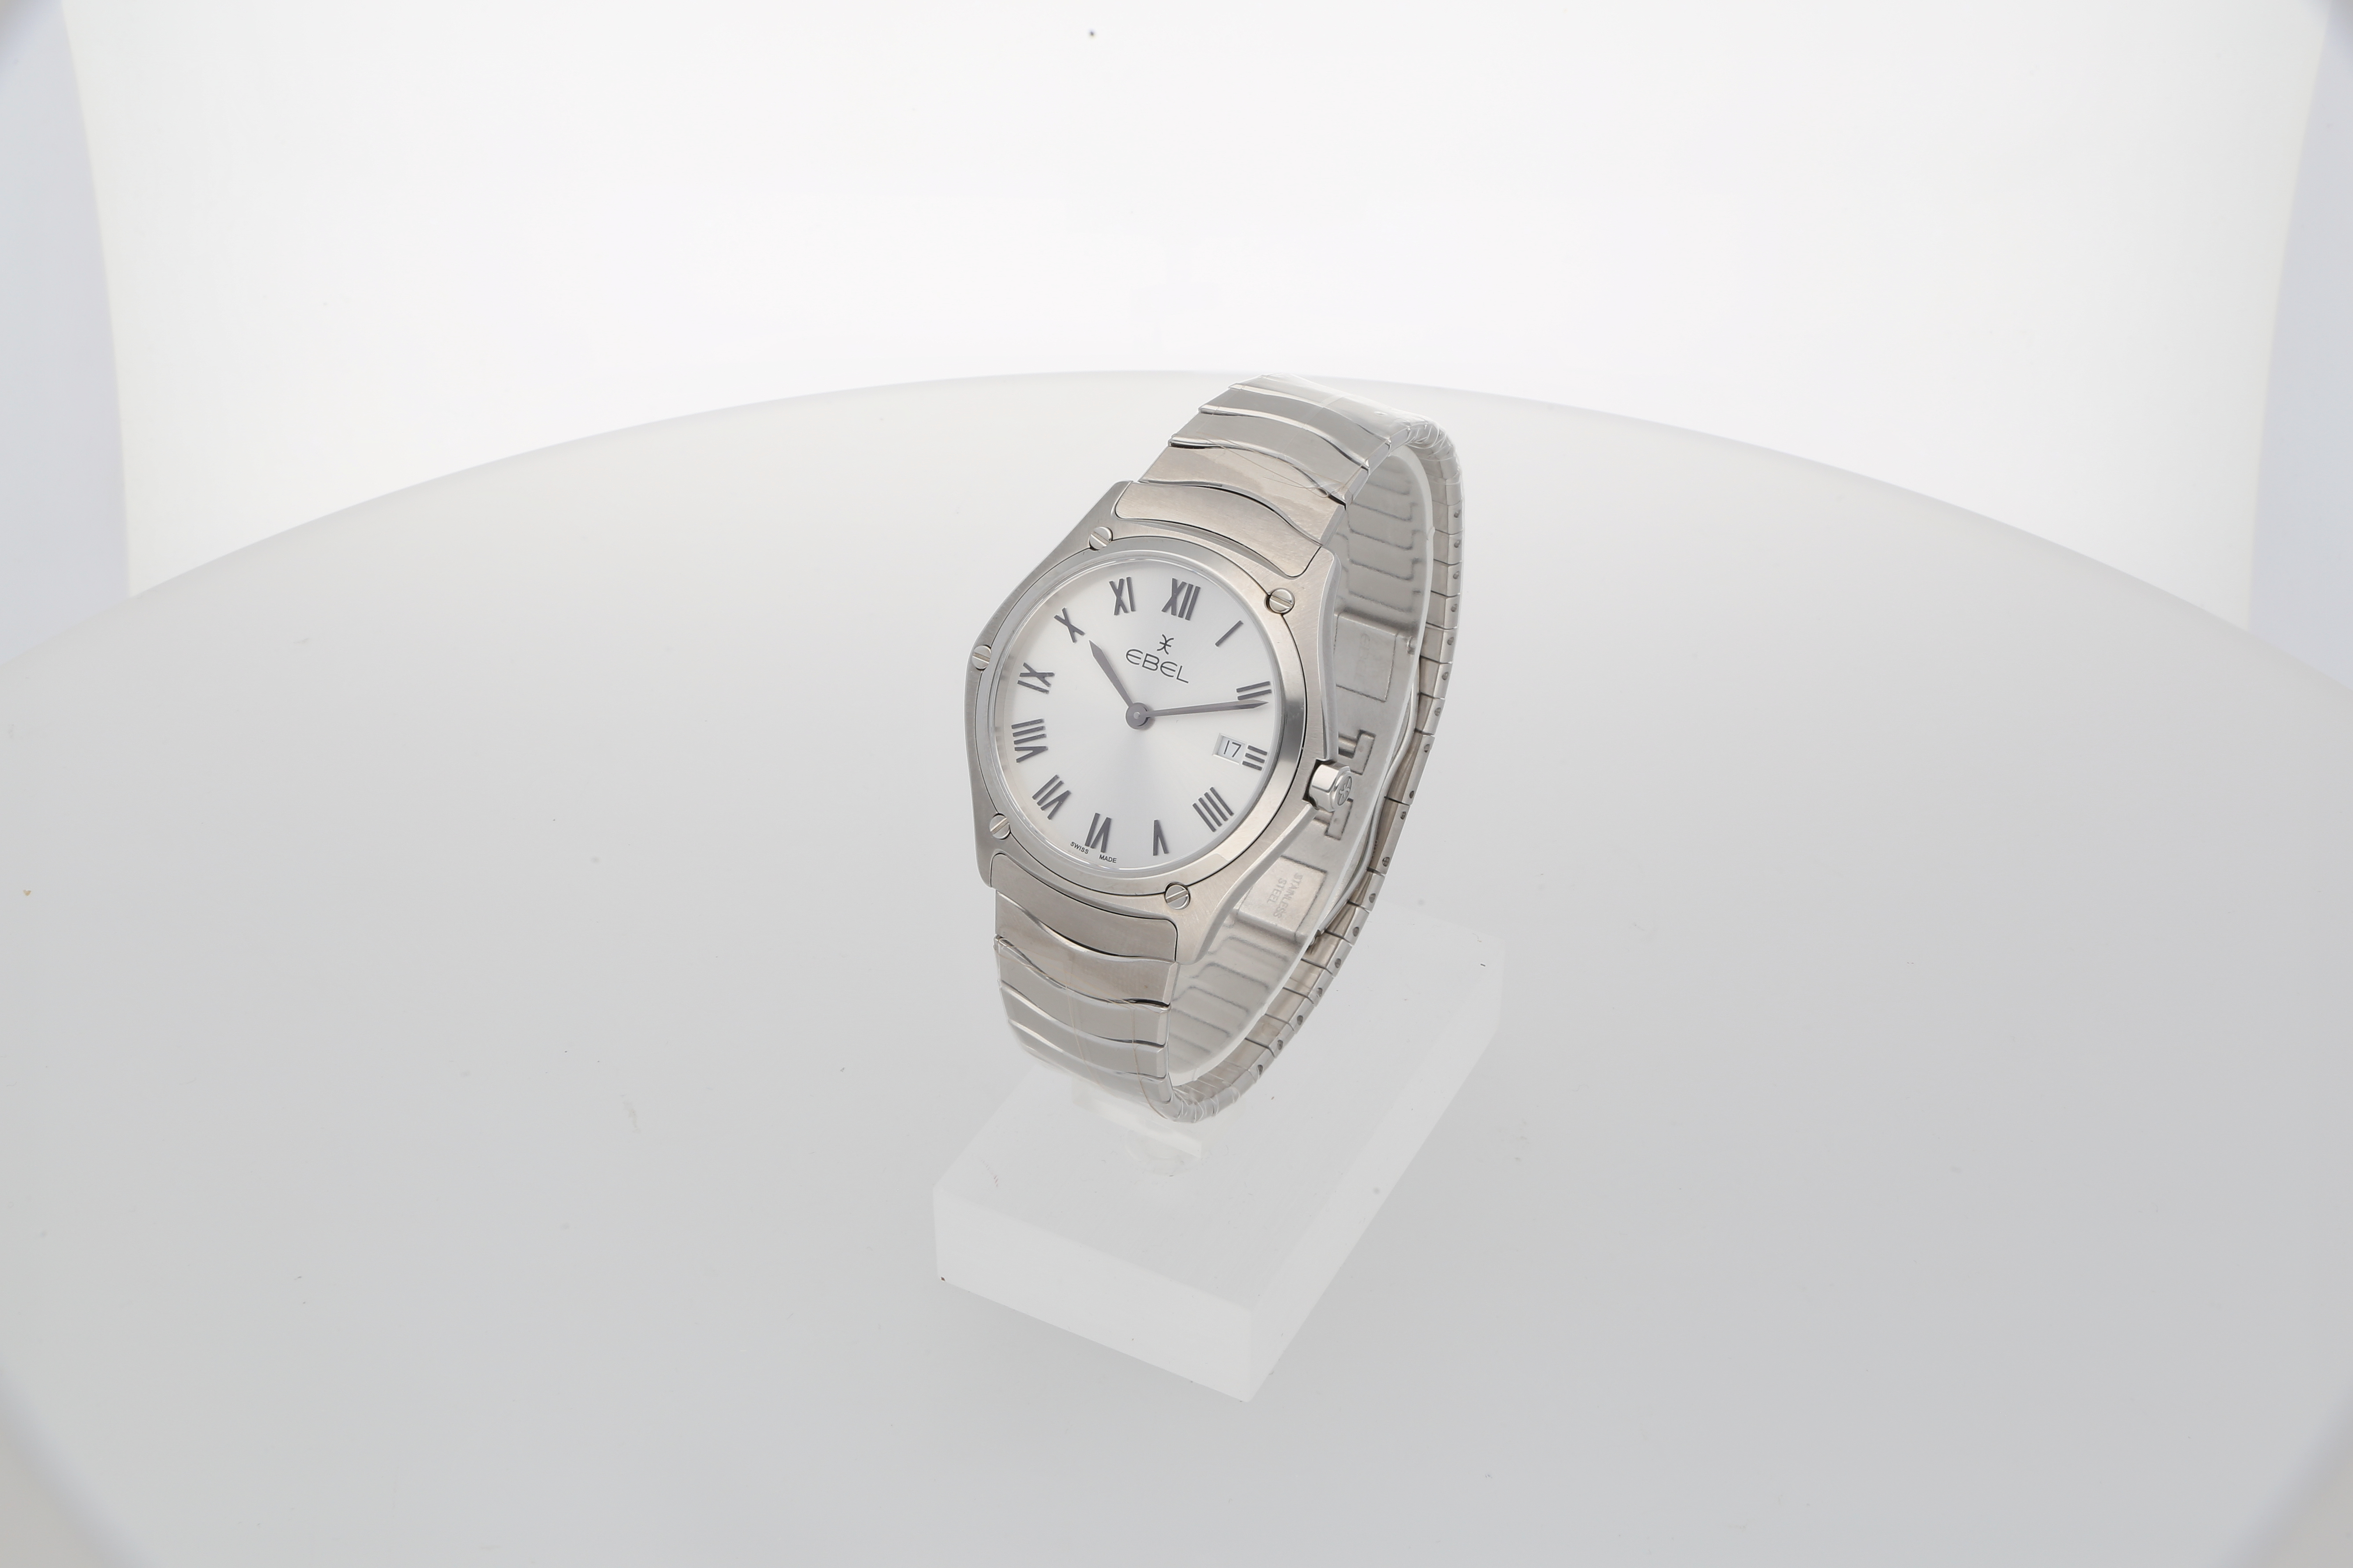 Second Hand Luxus Uhr jetzt online kaufen auf kaleaz.